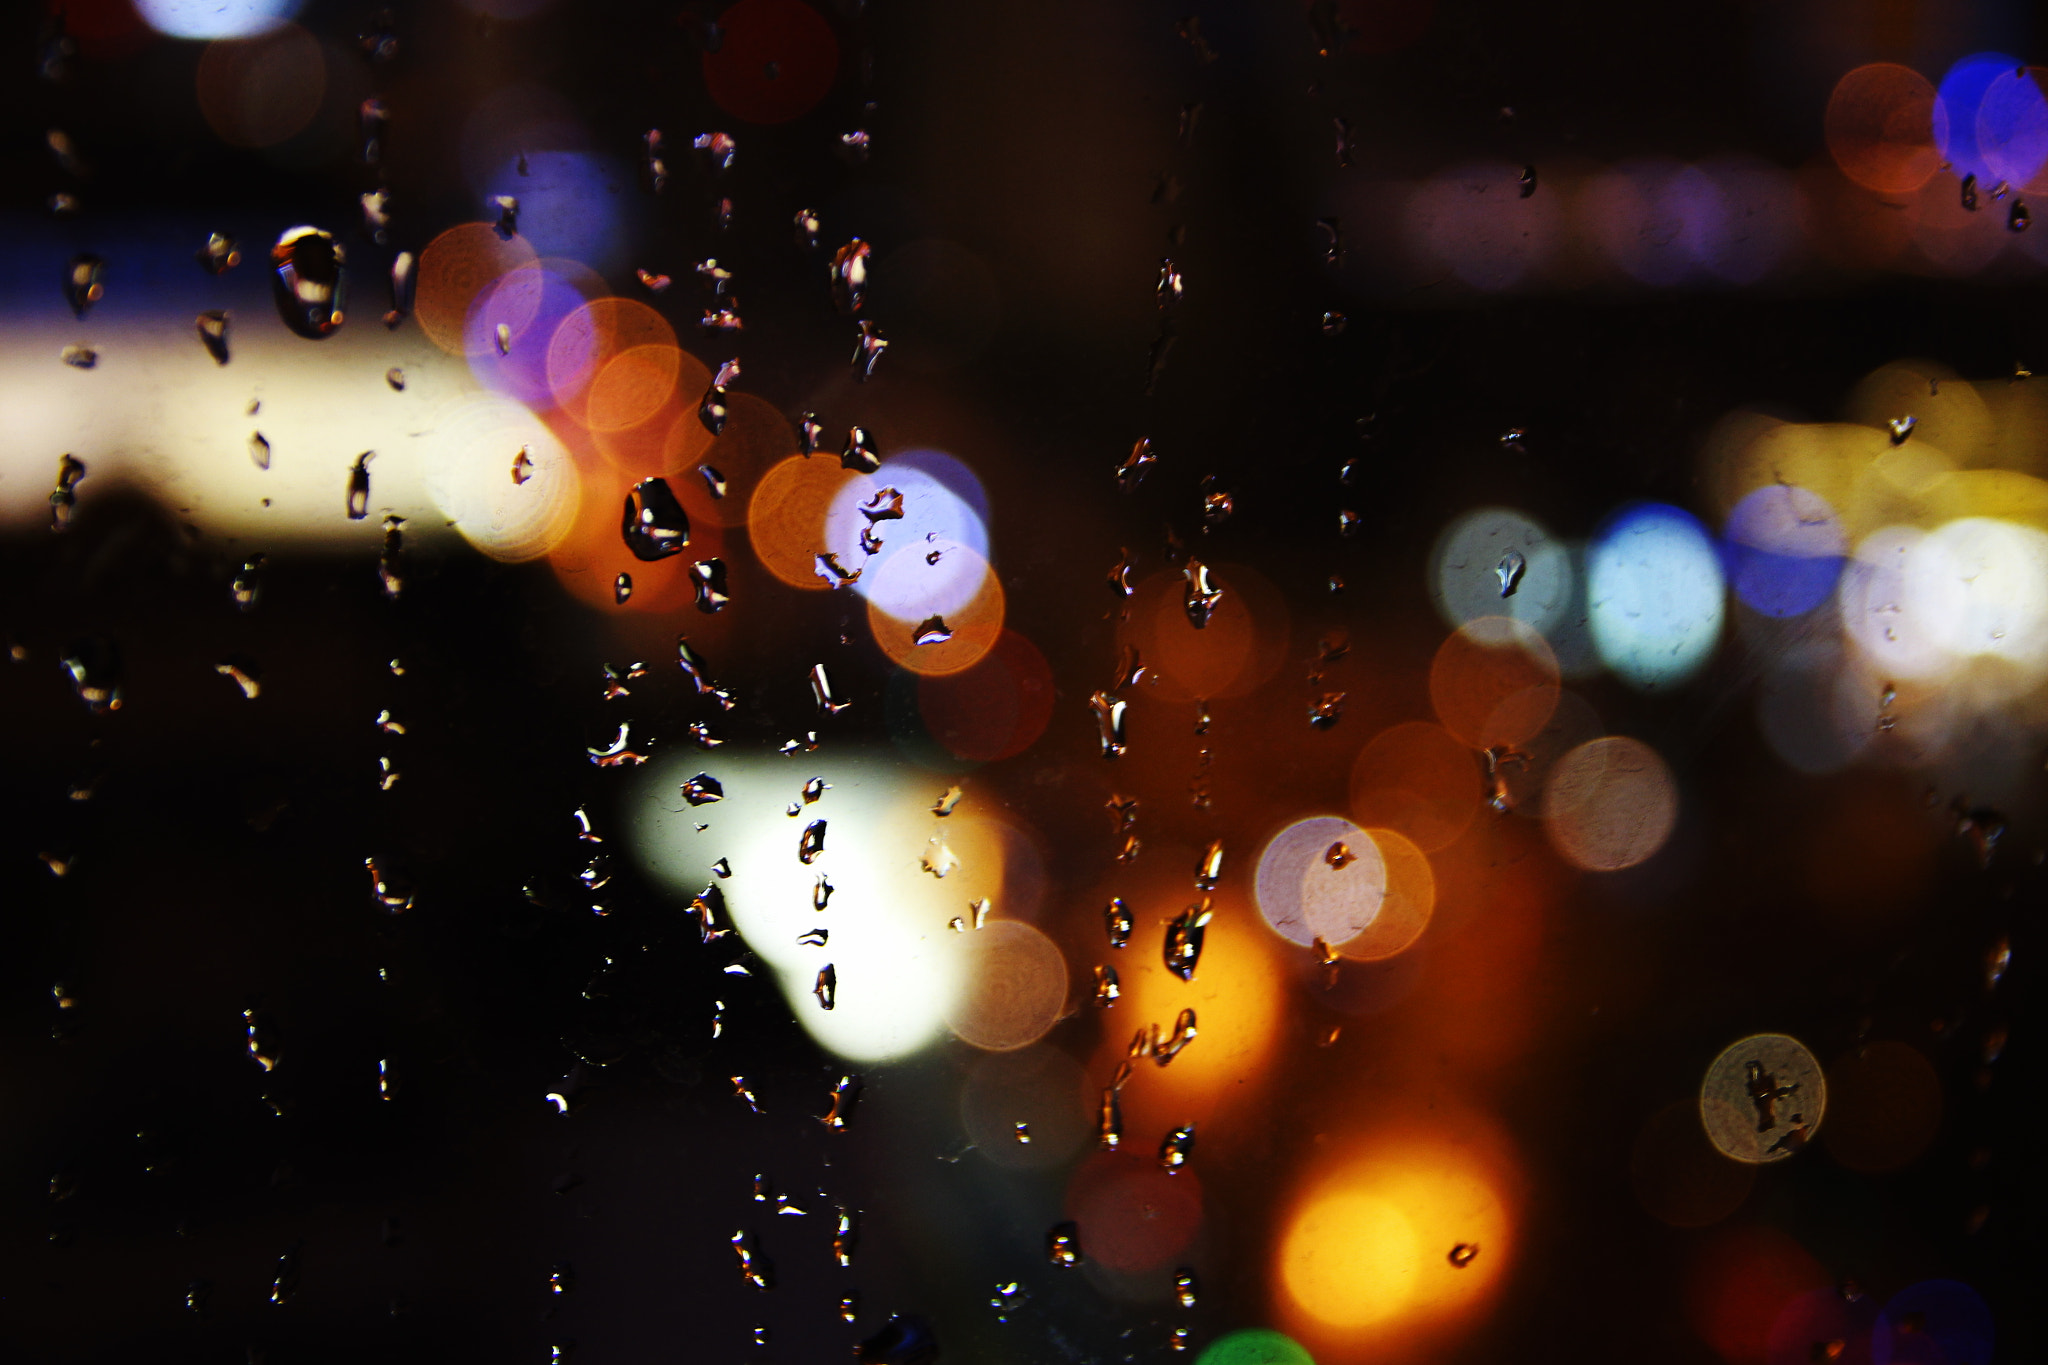 Canon EOS M2 sample photo. Rainy night photography